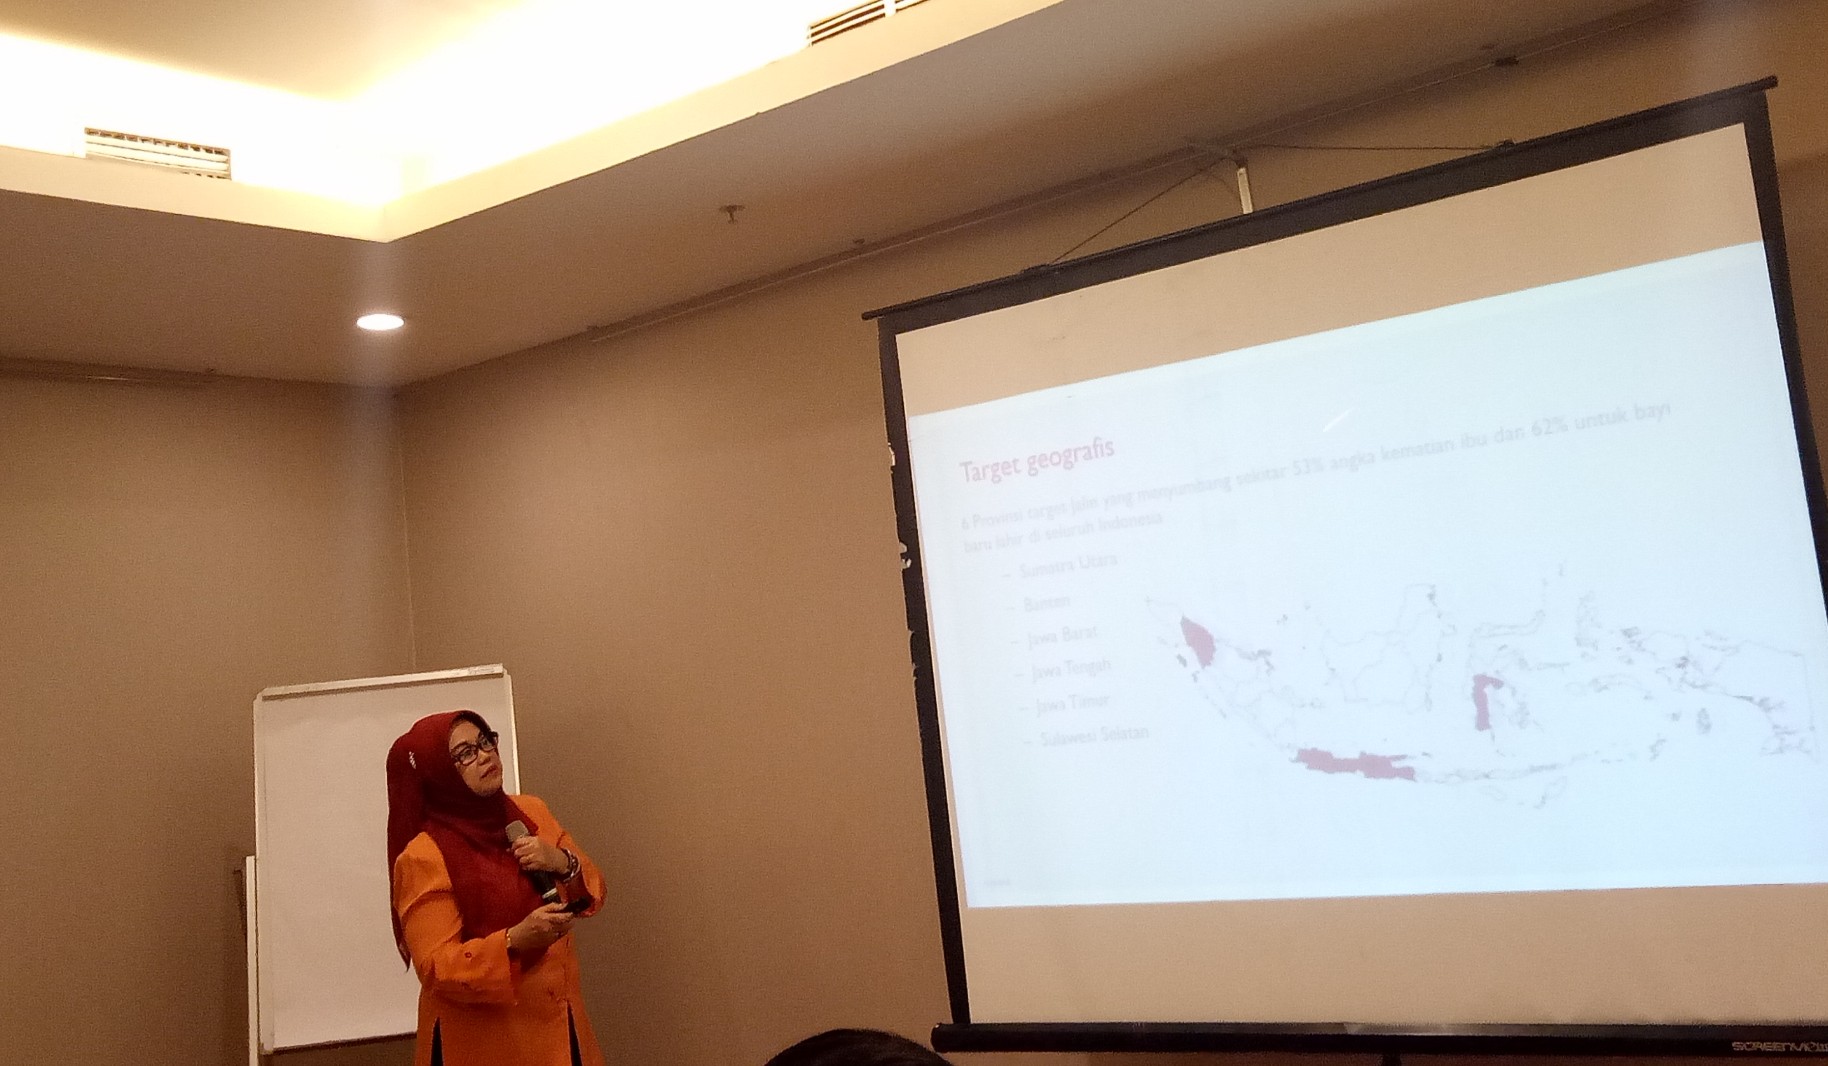 Regional Manager East Java Jalin, Purwida Liliek Haryati menjelaskan tentang angka kematian ibu dan bayi di Jatim selama kurun waktu 2017, dalam pertemuan dengan media, di Surabaya, Kamis, 15 November 2018. (Foto: Pita/ngopibareng.id)